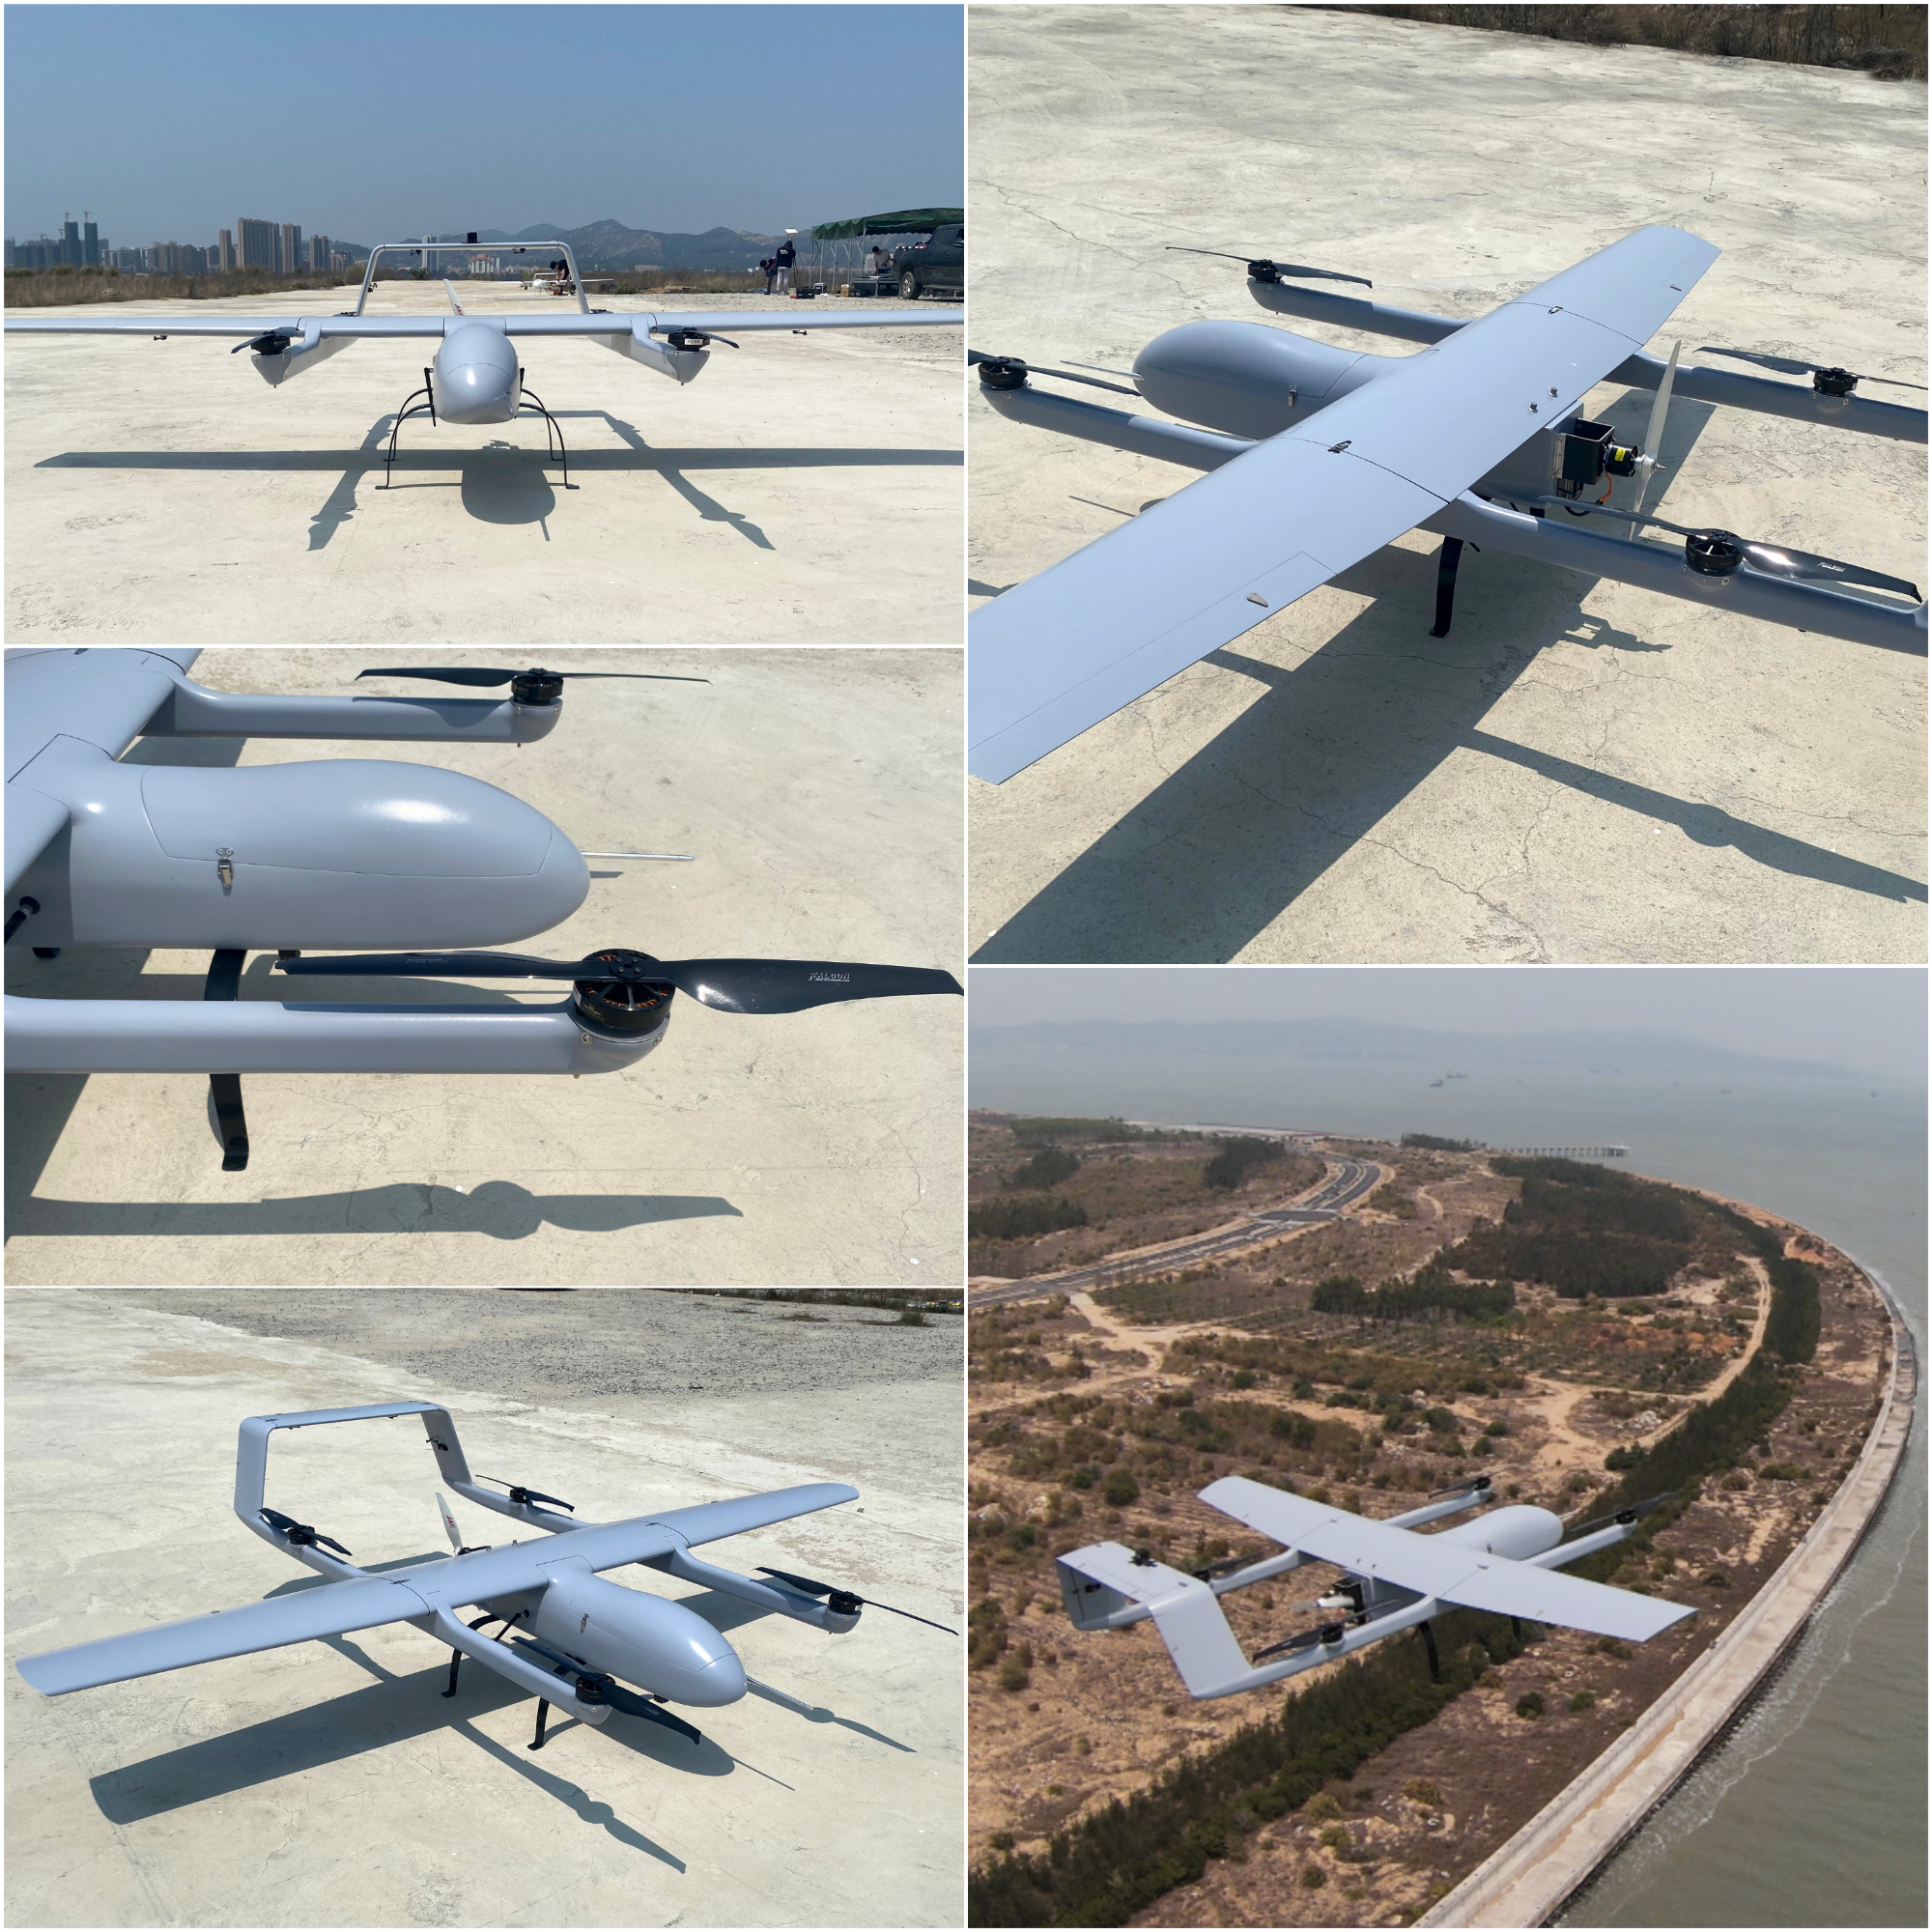 Mugin-2 Pro 2930MM H-Tail Full Carbon Fiber VTOL UAV Platform 